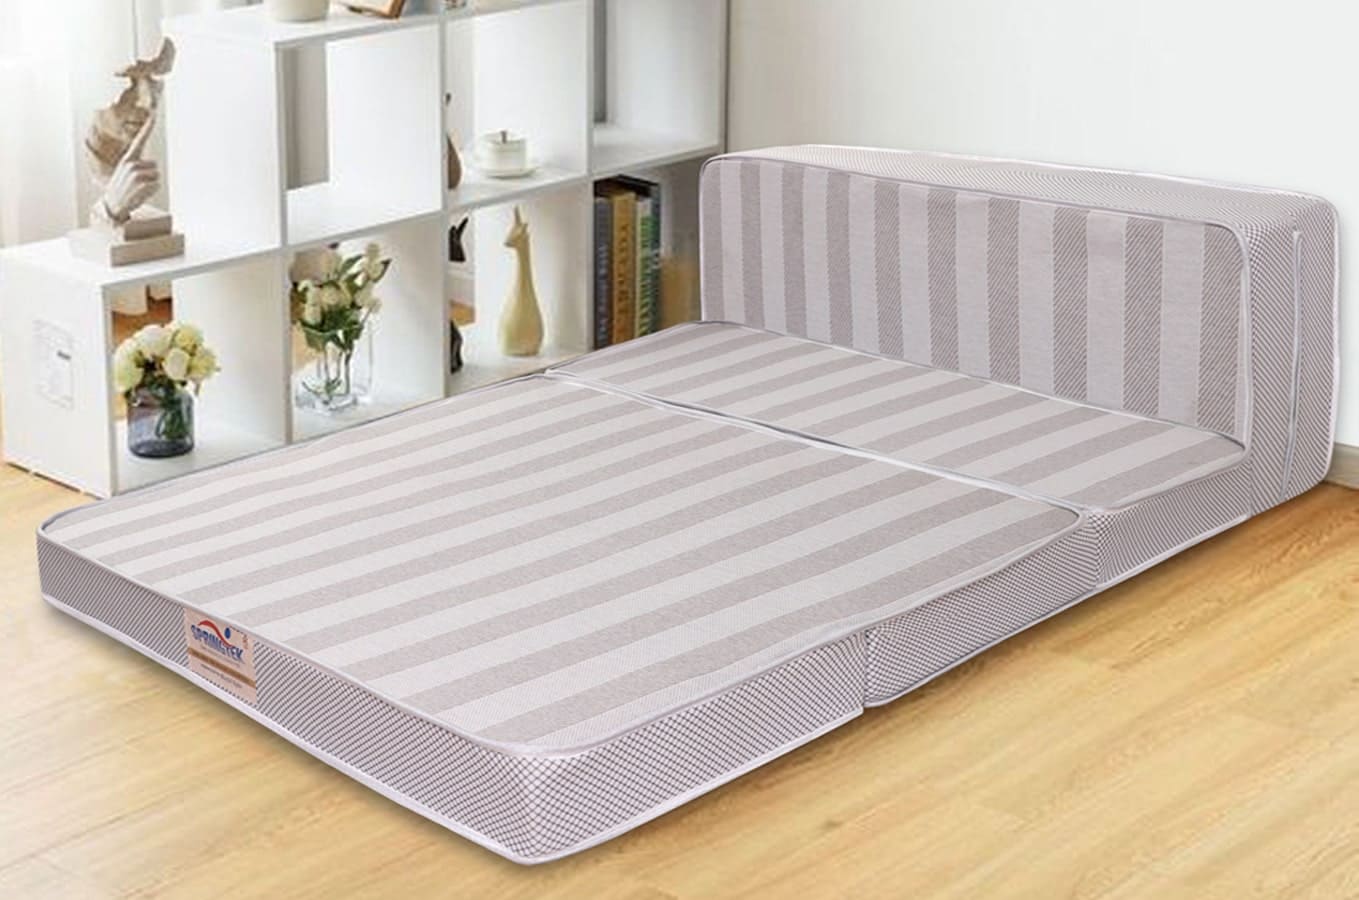 foldable twin mattress amazon